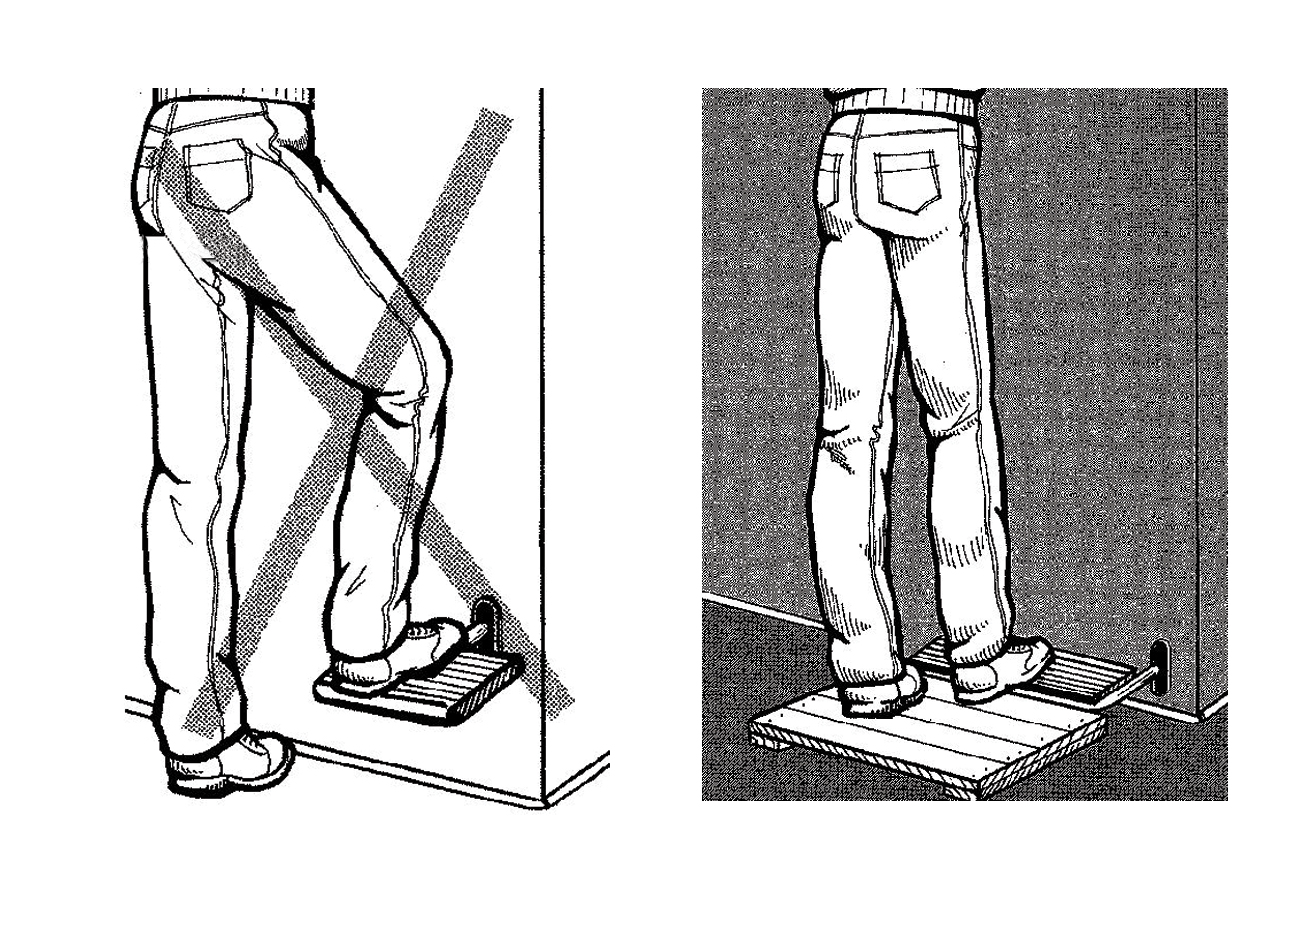 από το οριζόντιο επίπεδο). Το βάρος του σώματος στην όρθια στάση πρέπει να μπορεί να φέρεται εξίσου από τα δύο πόδια.